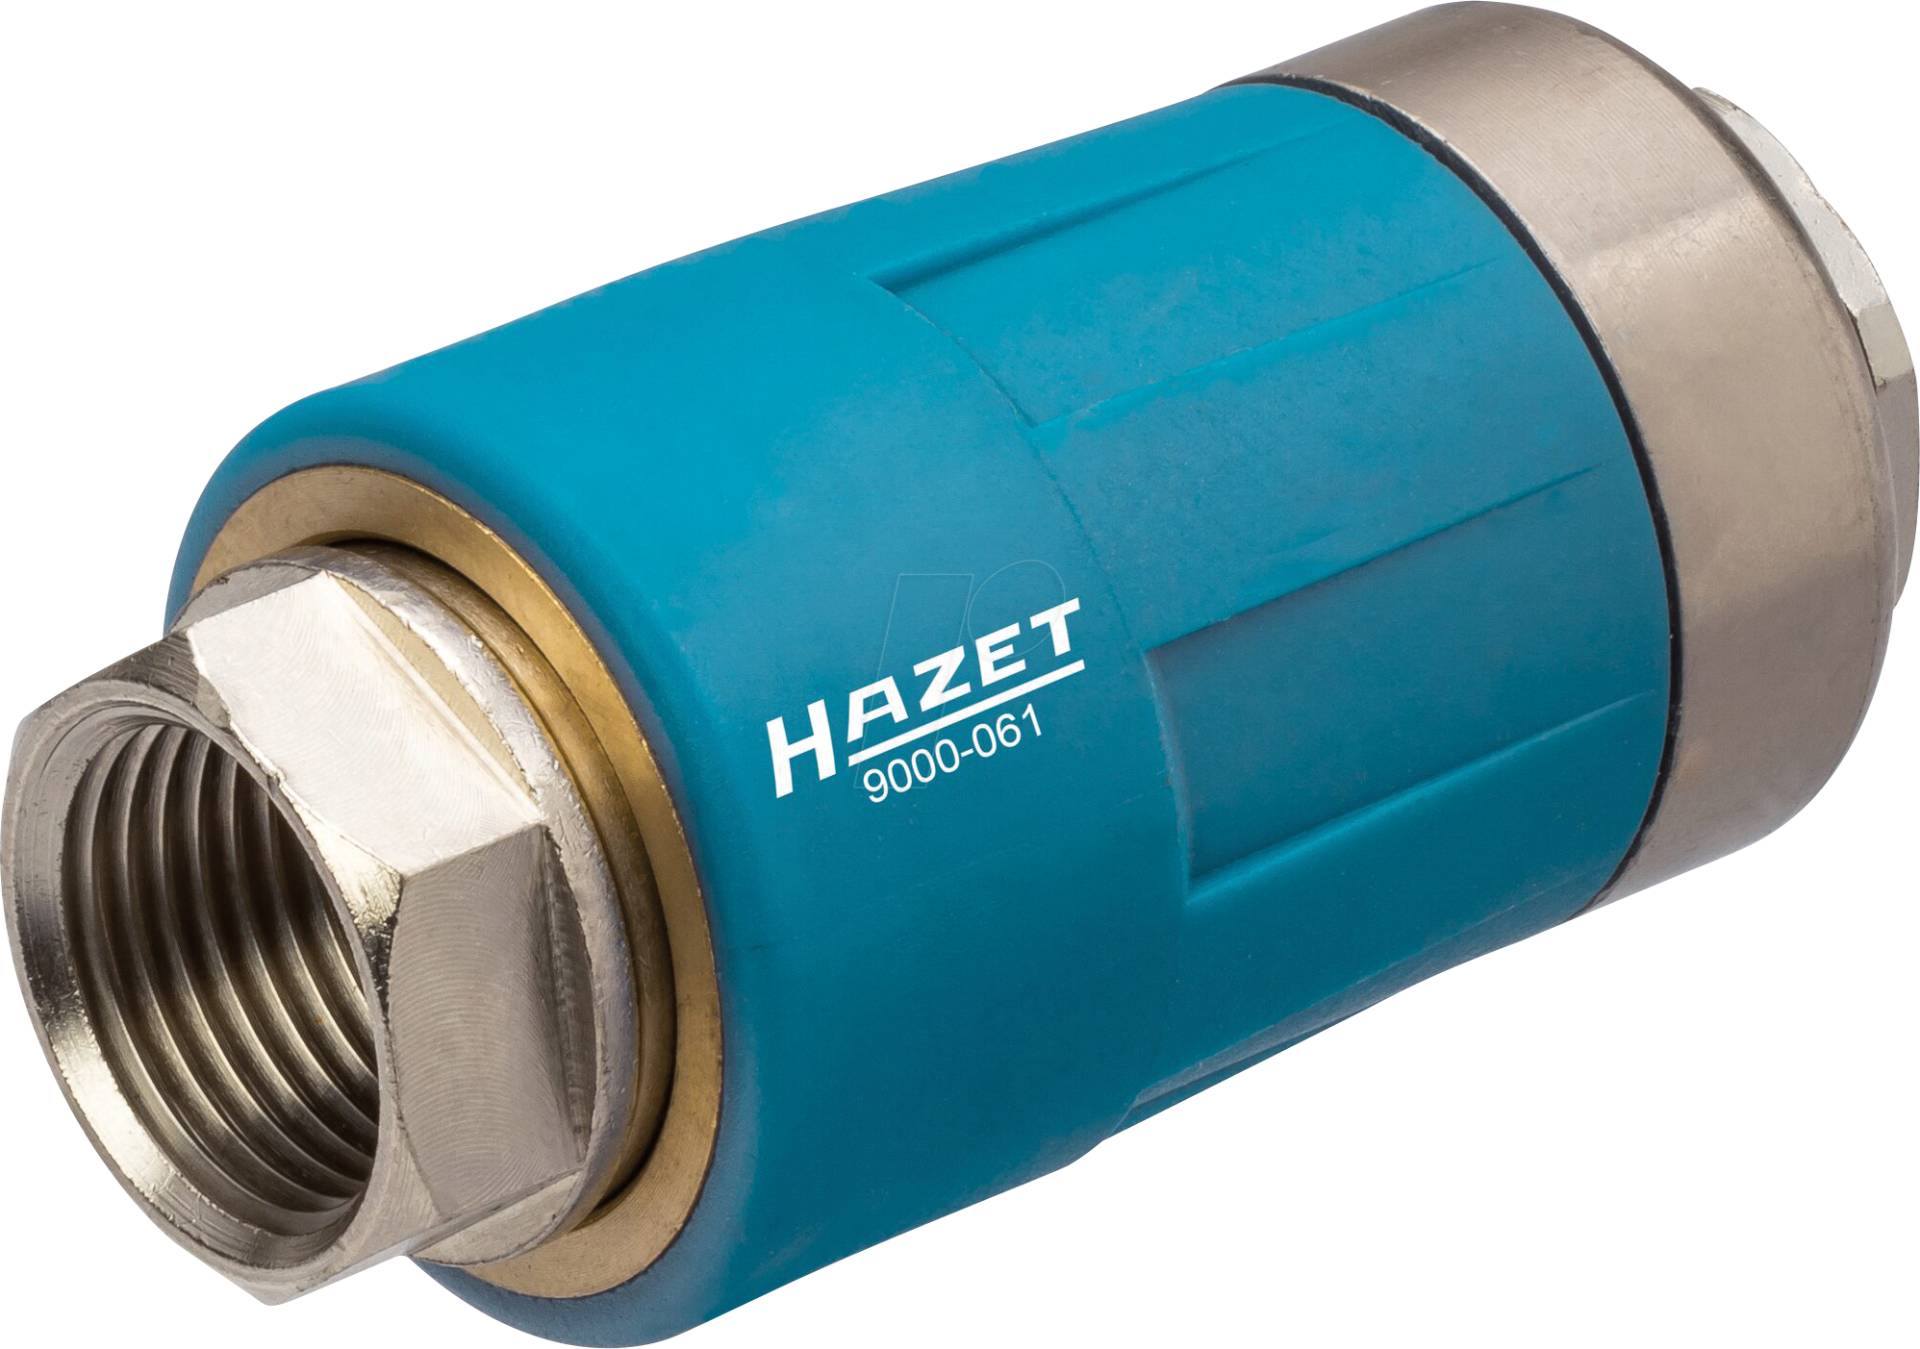 HZ 9000-061 - Sicherheitskupplung von Hazet